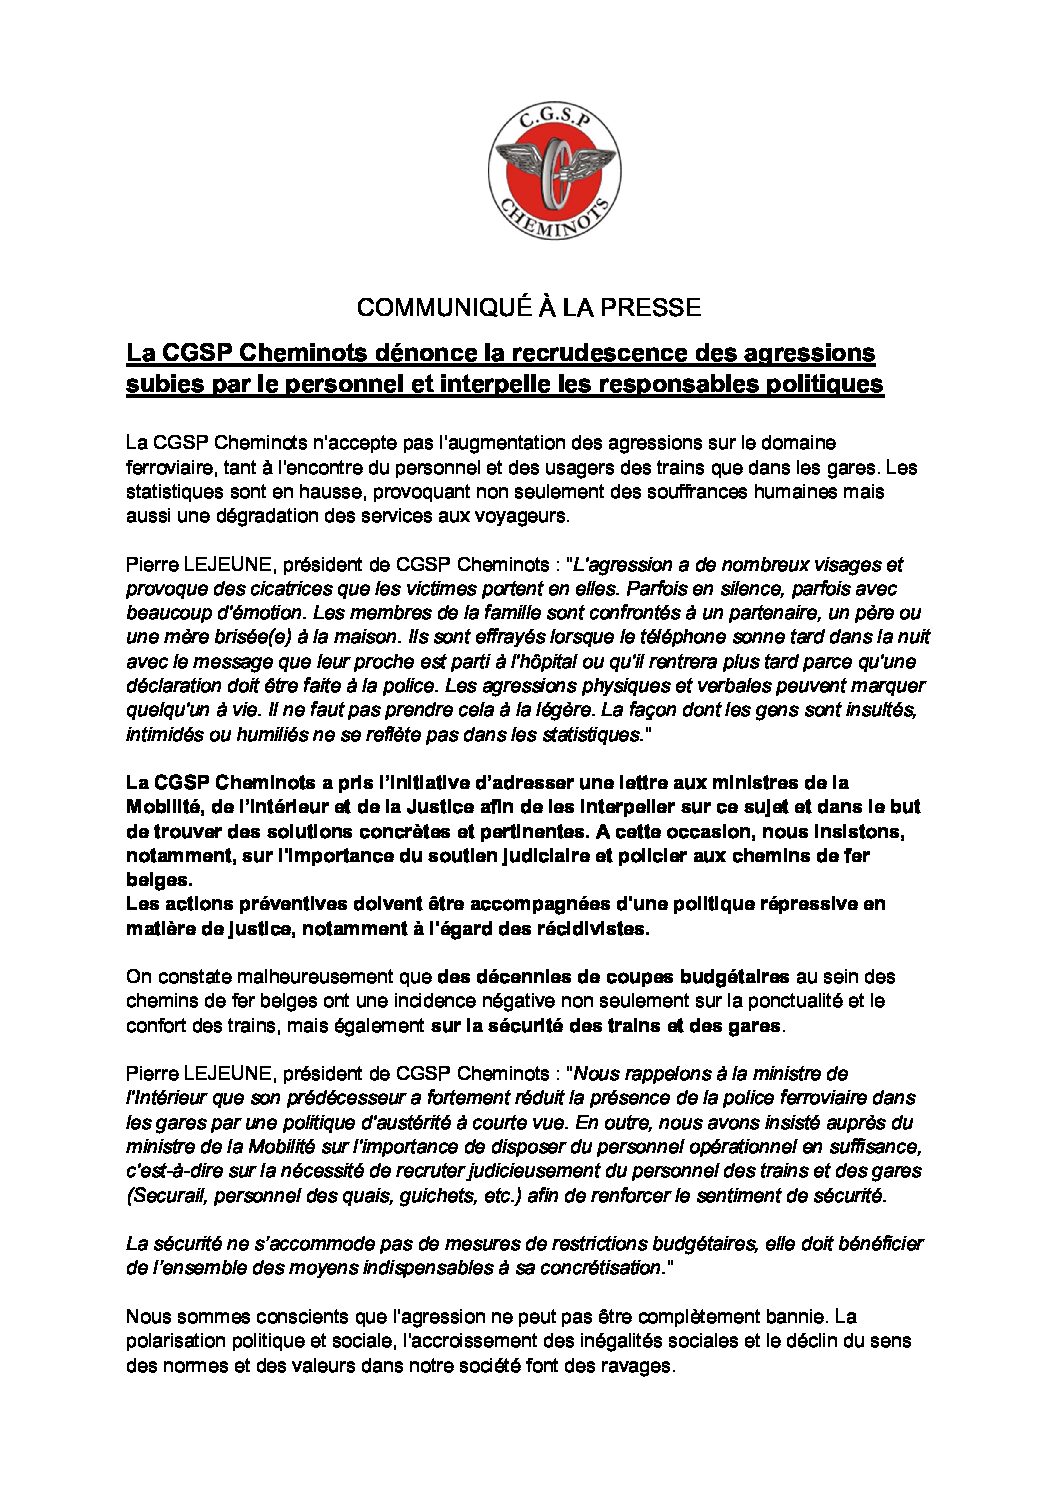 Communiqué de presse: La CGSP Cheminots dénonce la recrudescence des agressions subies par le personnel et interpelle les responsables politiques